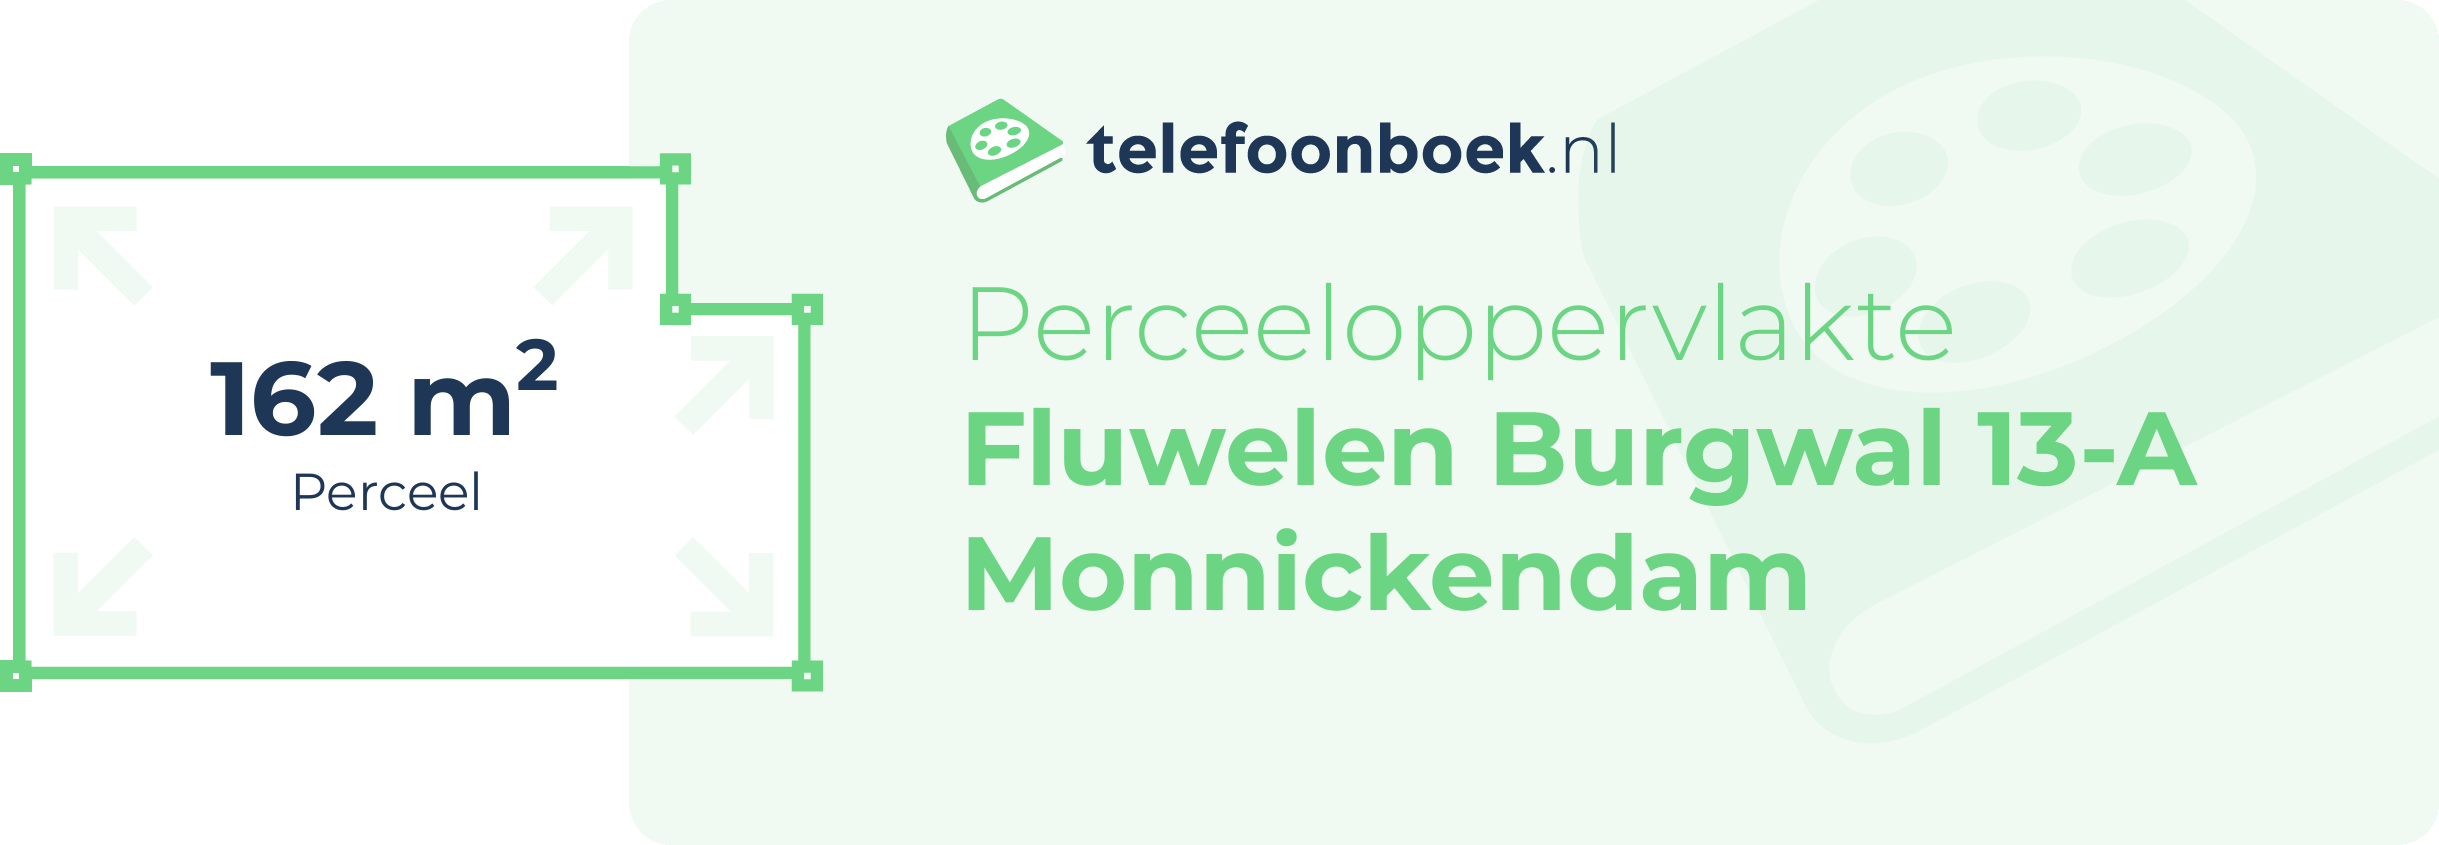 Perceeloppervlakte Fluwelen Burgwal 13-A Monnickendam